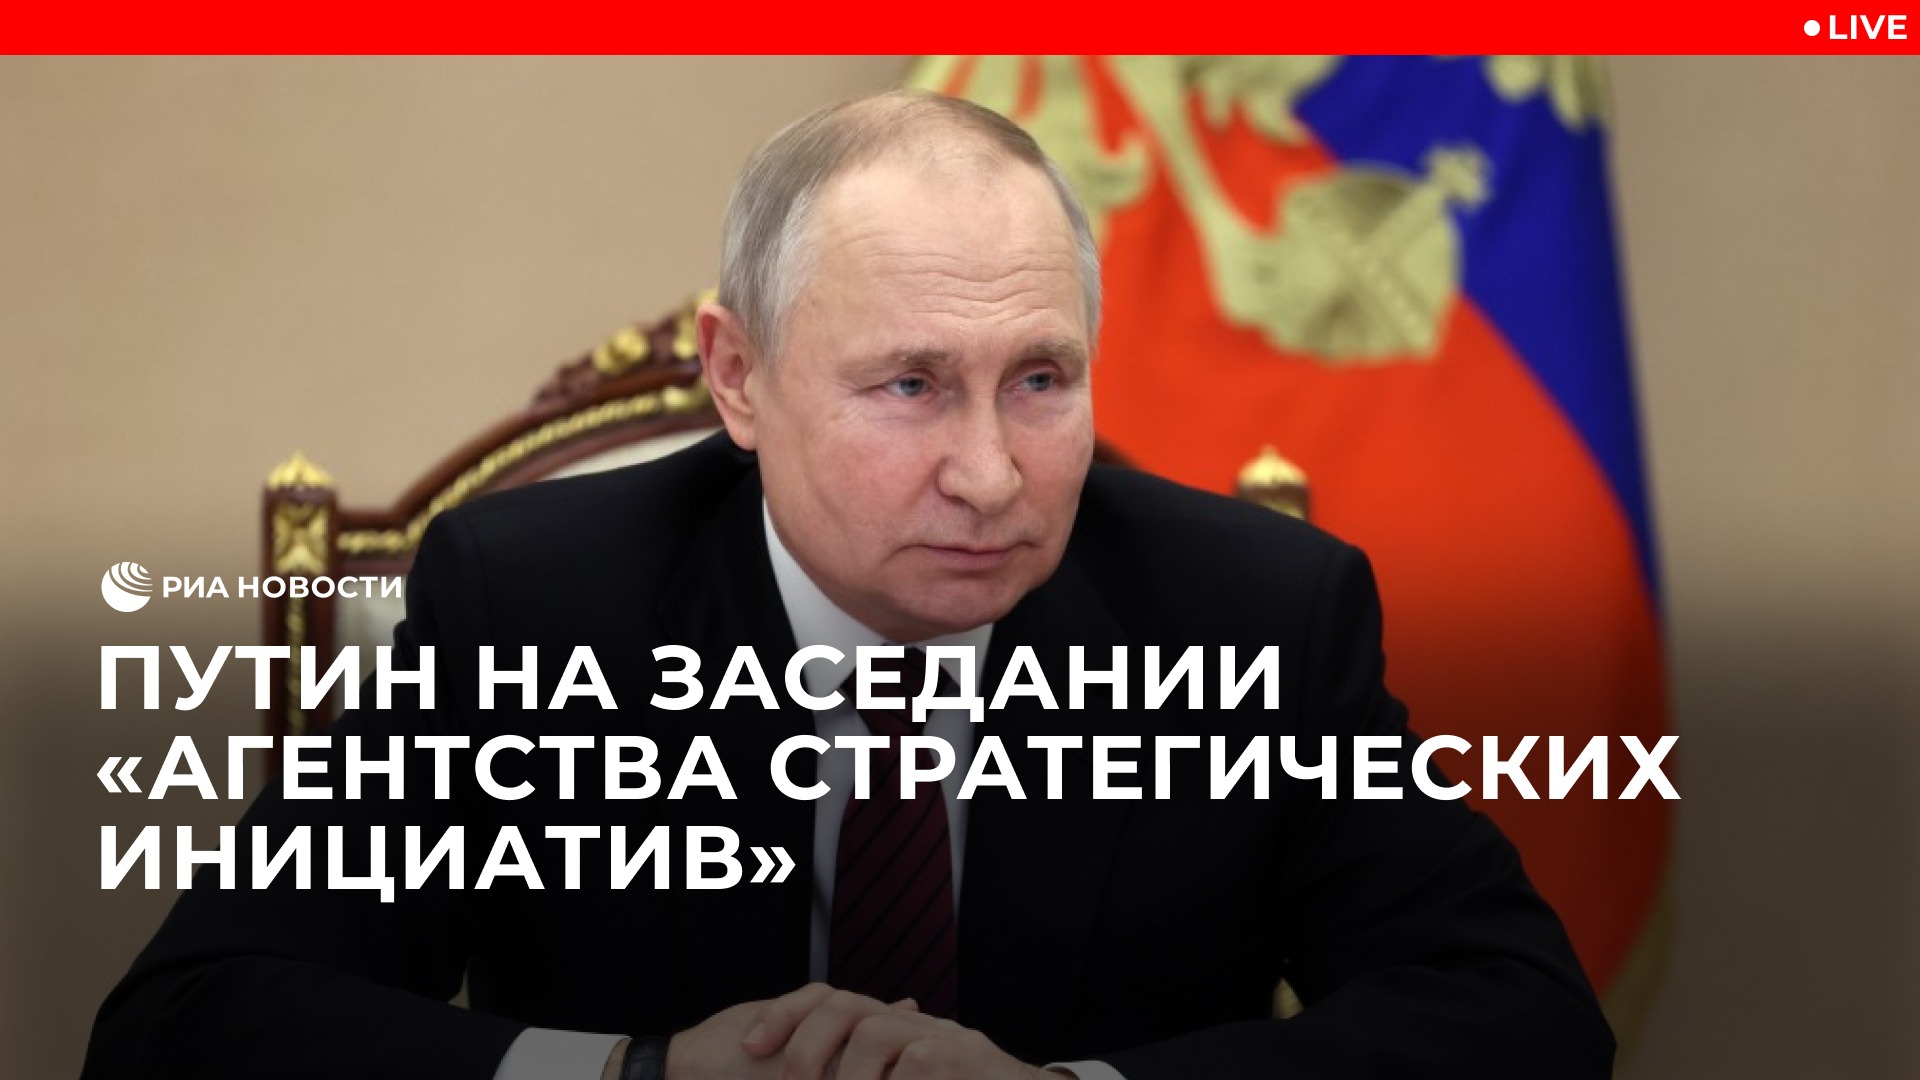 Путин на заседании "Агентства стратегических инициатив"